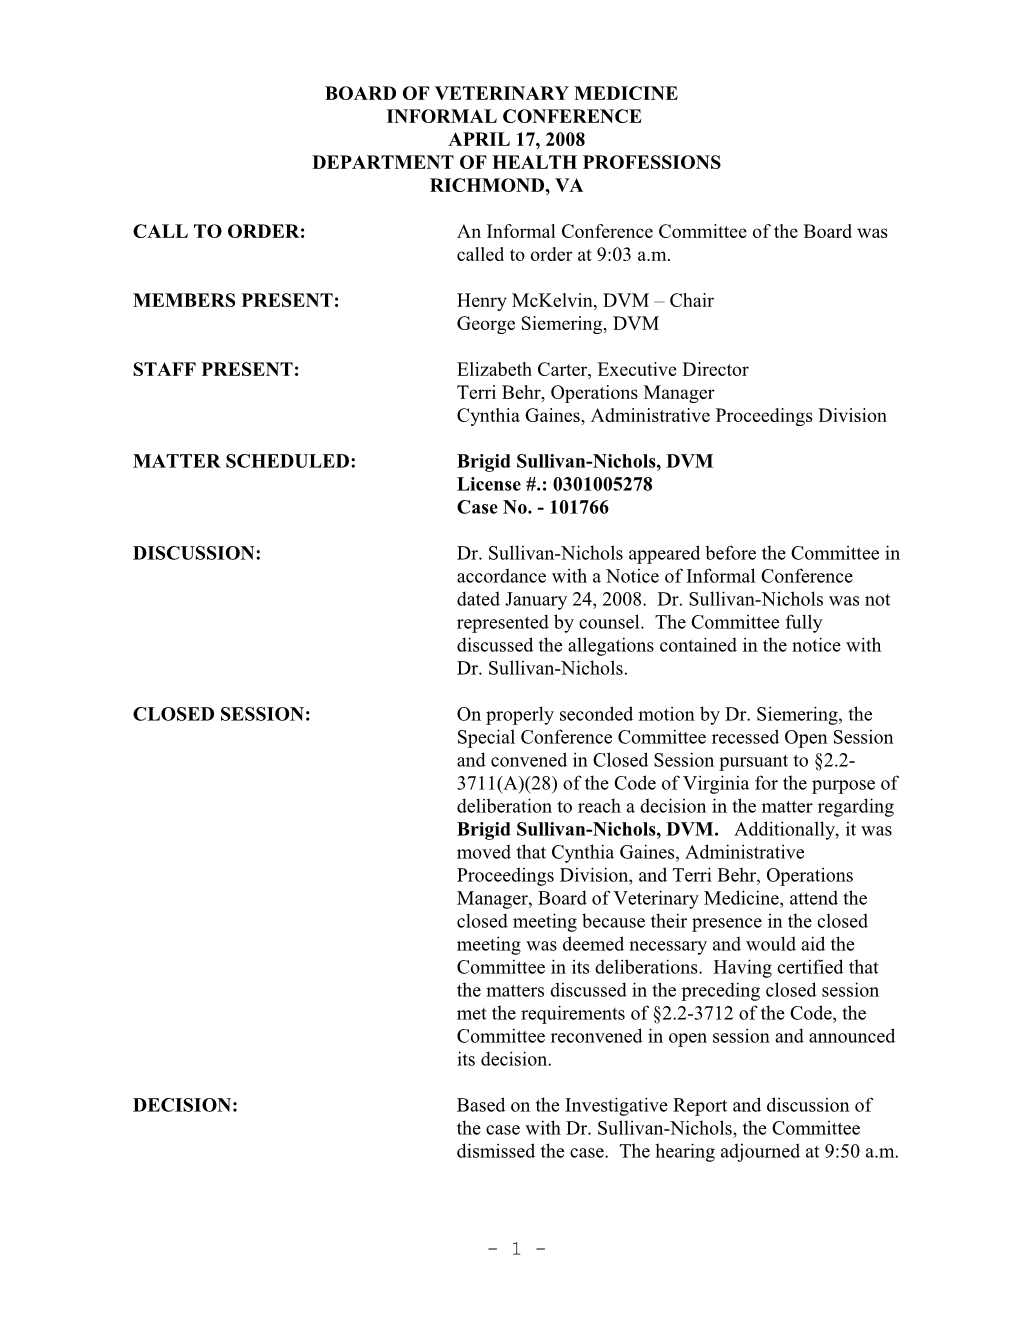 VIRGINIA BOARD of VETERINARY MEDICINE Minutes 4-17-2008